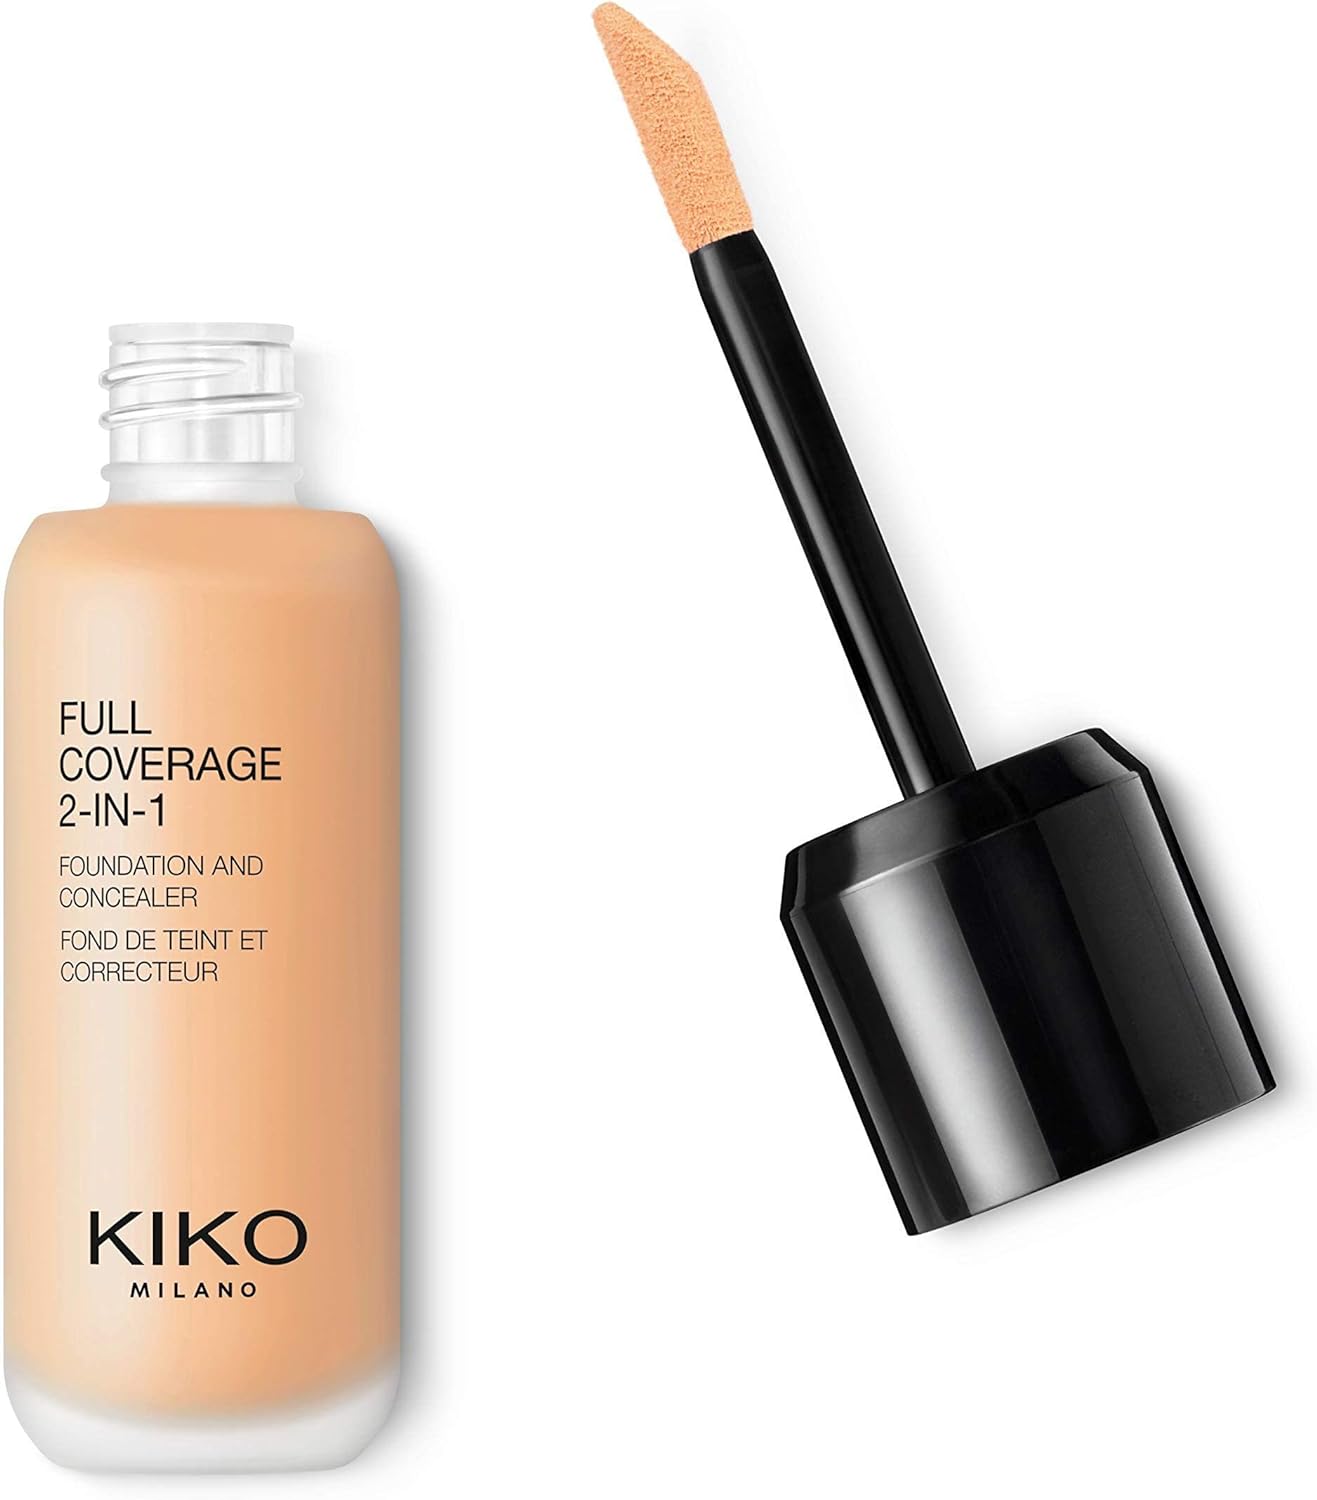 کرم پودر و کانسیلر کیکو میلانو مدل KIKO Milano Full Coverage - ارسال 10 الی 15 روز کاری